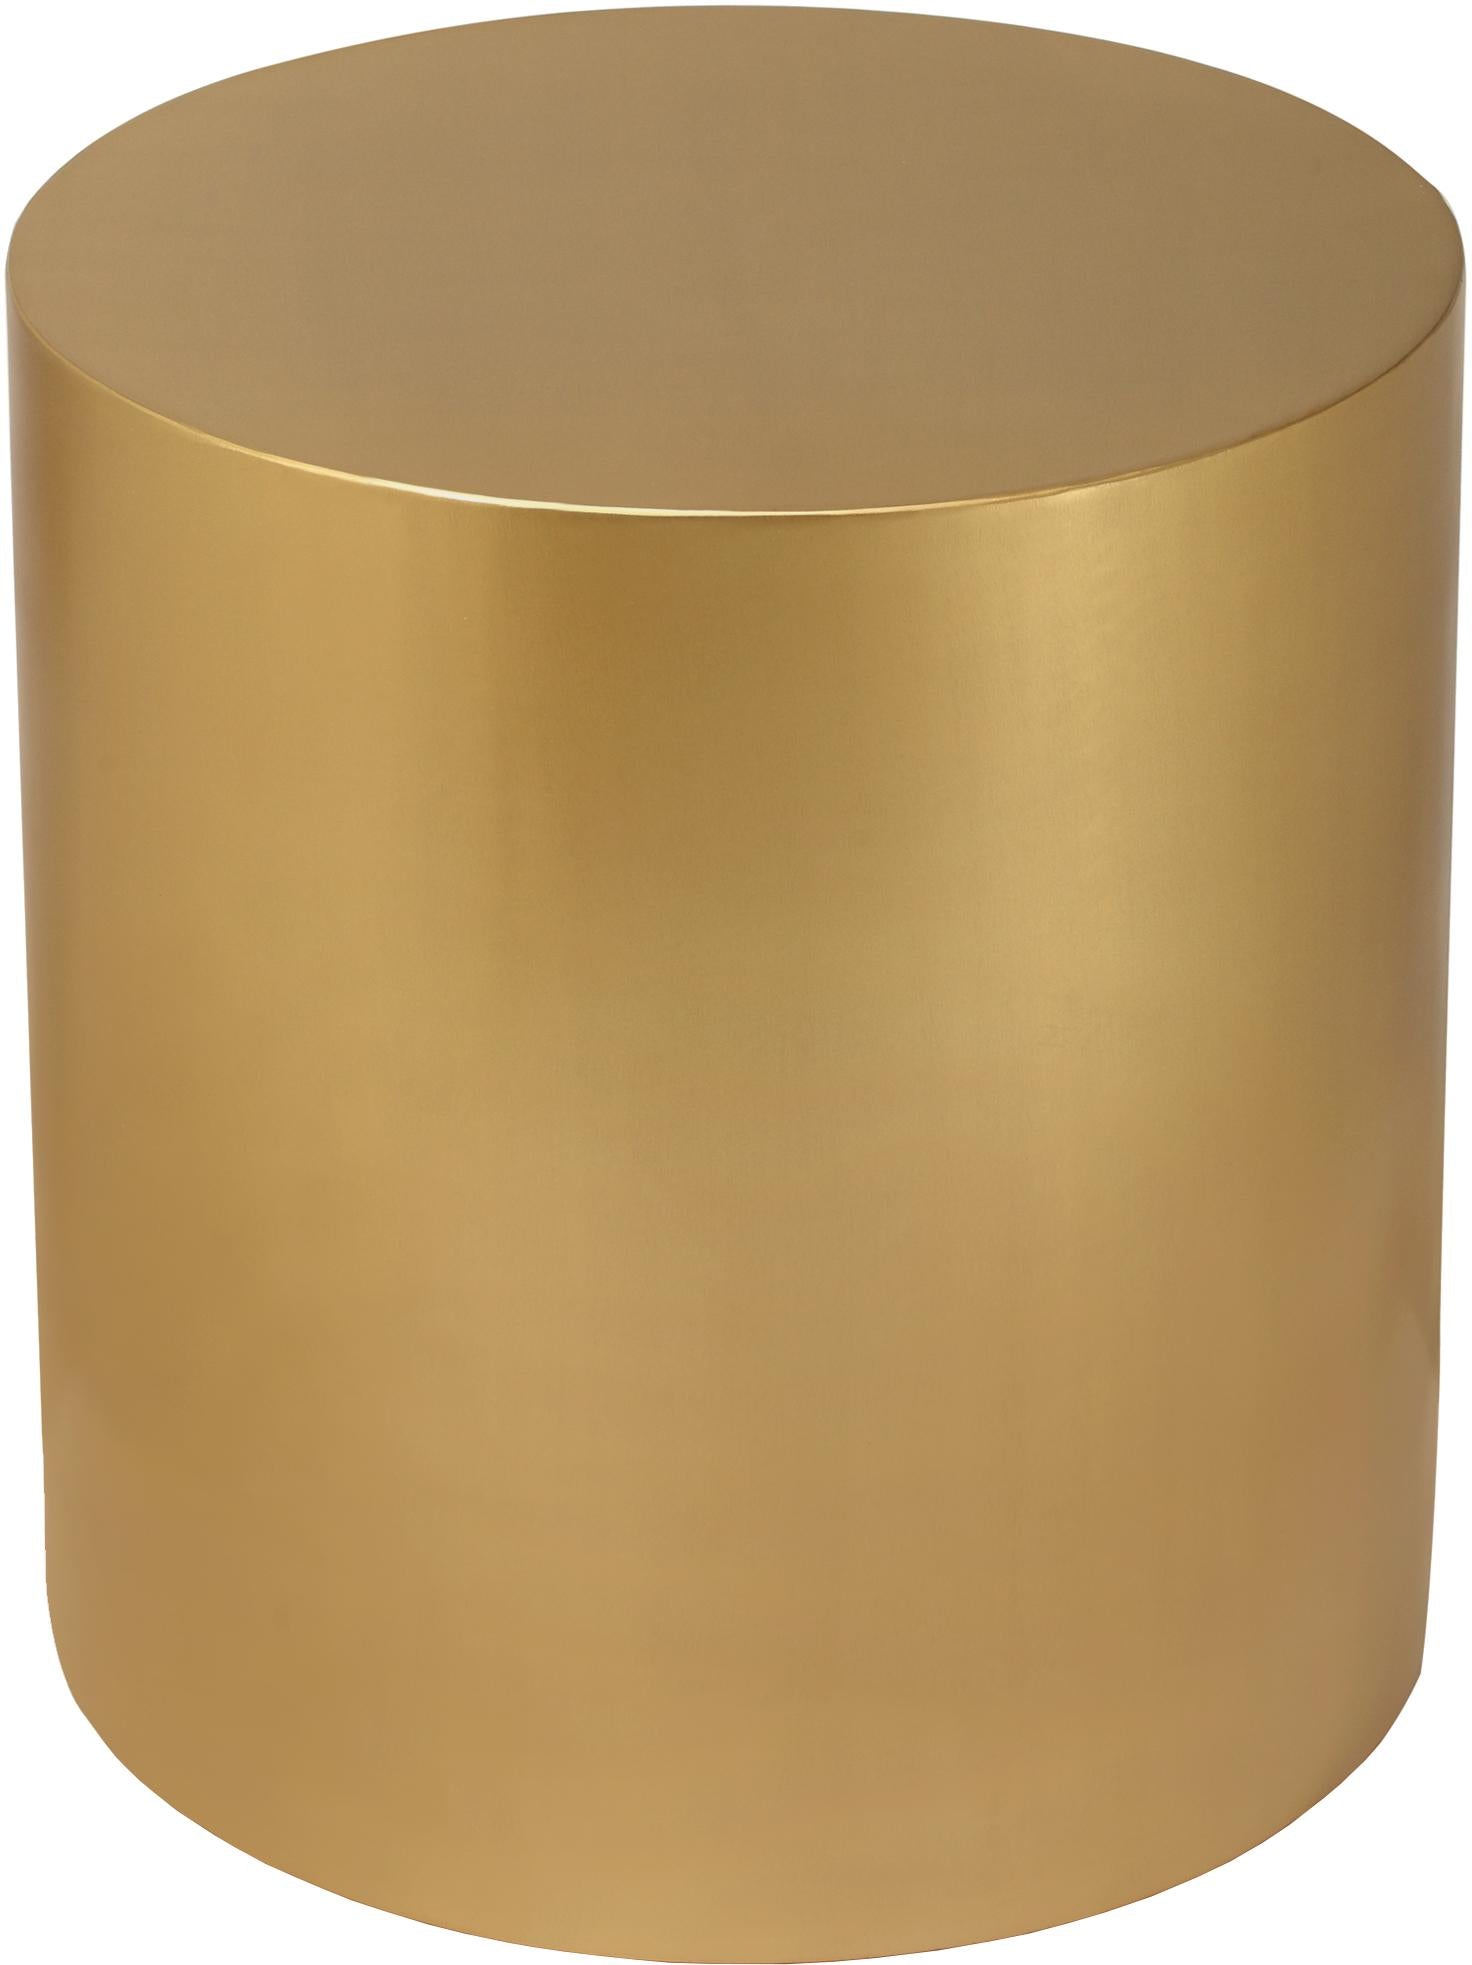 Cylinder Brushed Gold End Table